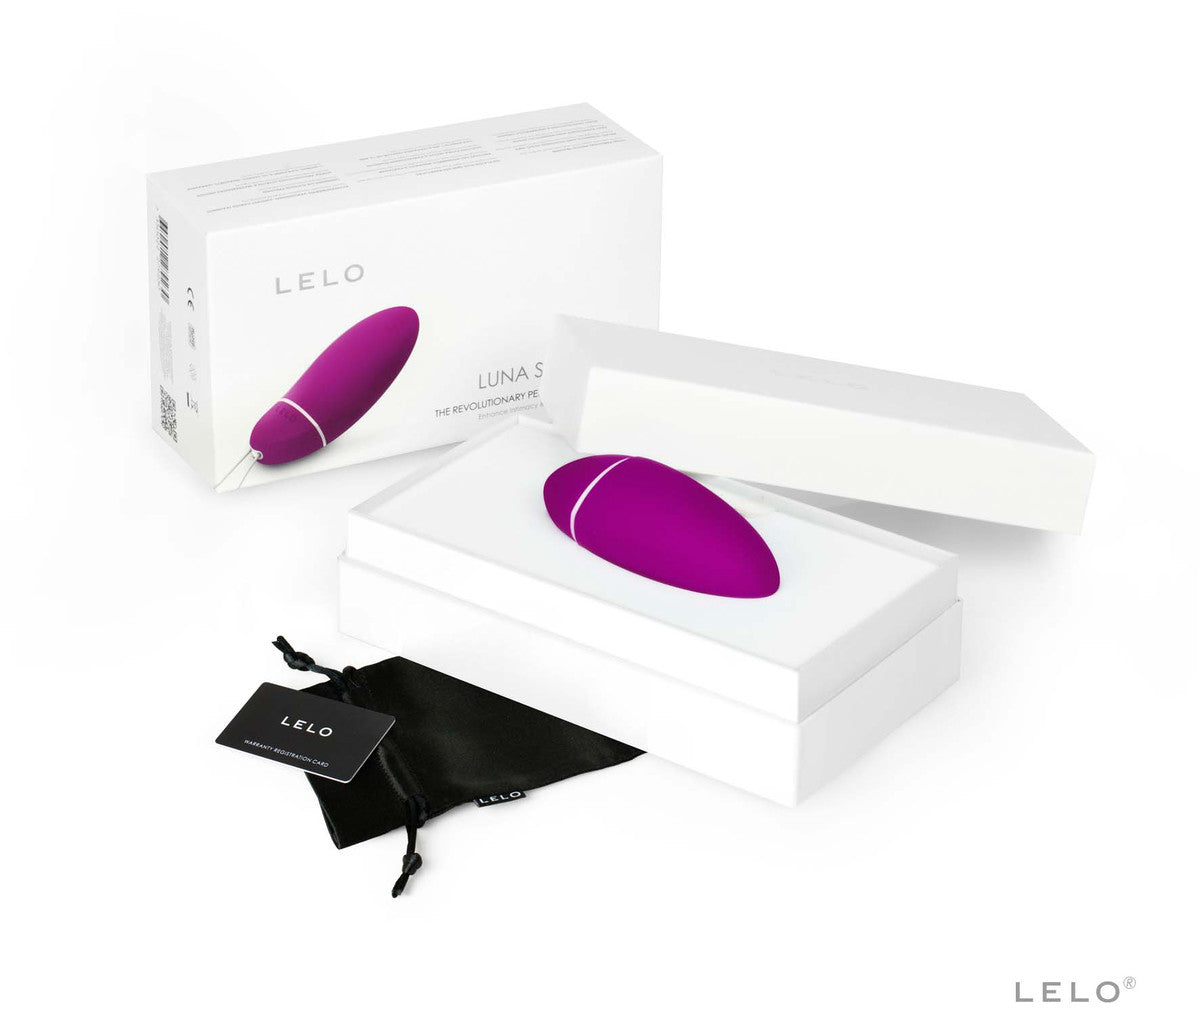 LELO Luna Smart Bead 5 Modes Bullet Vibrator Kegel Exerciser Massager